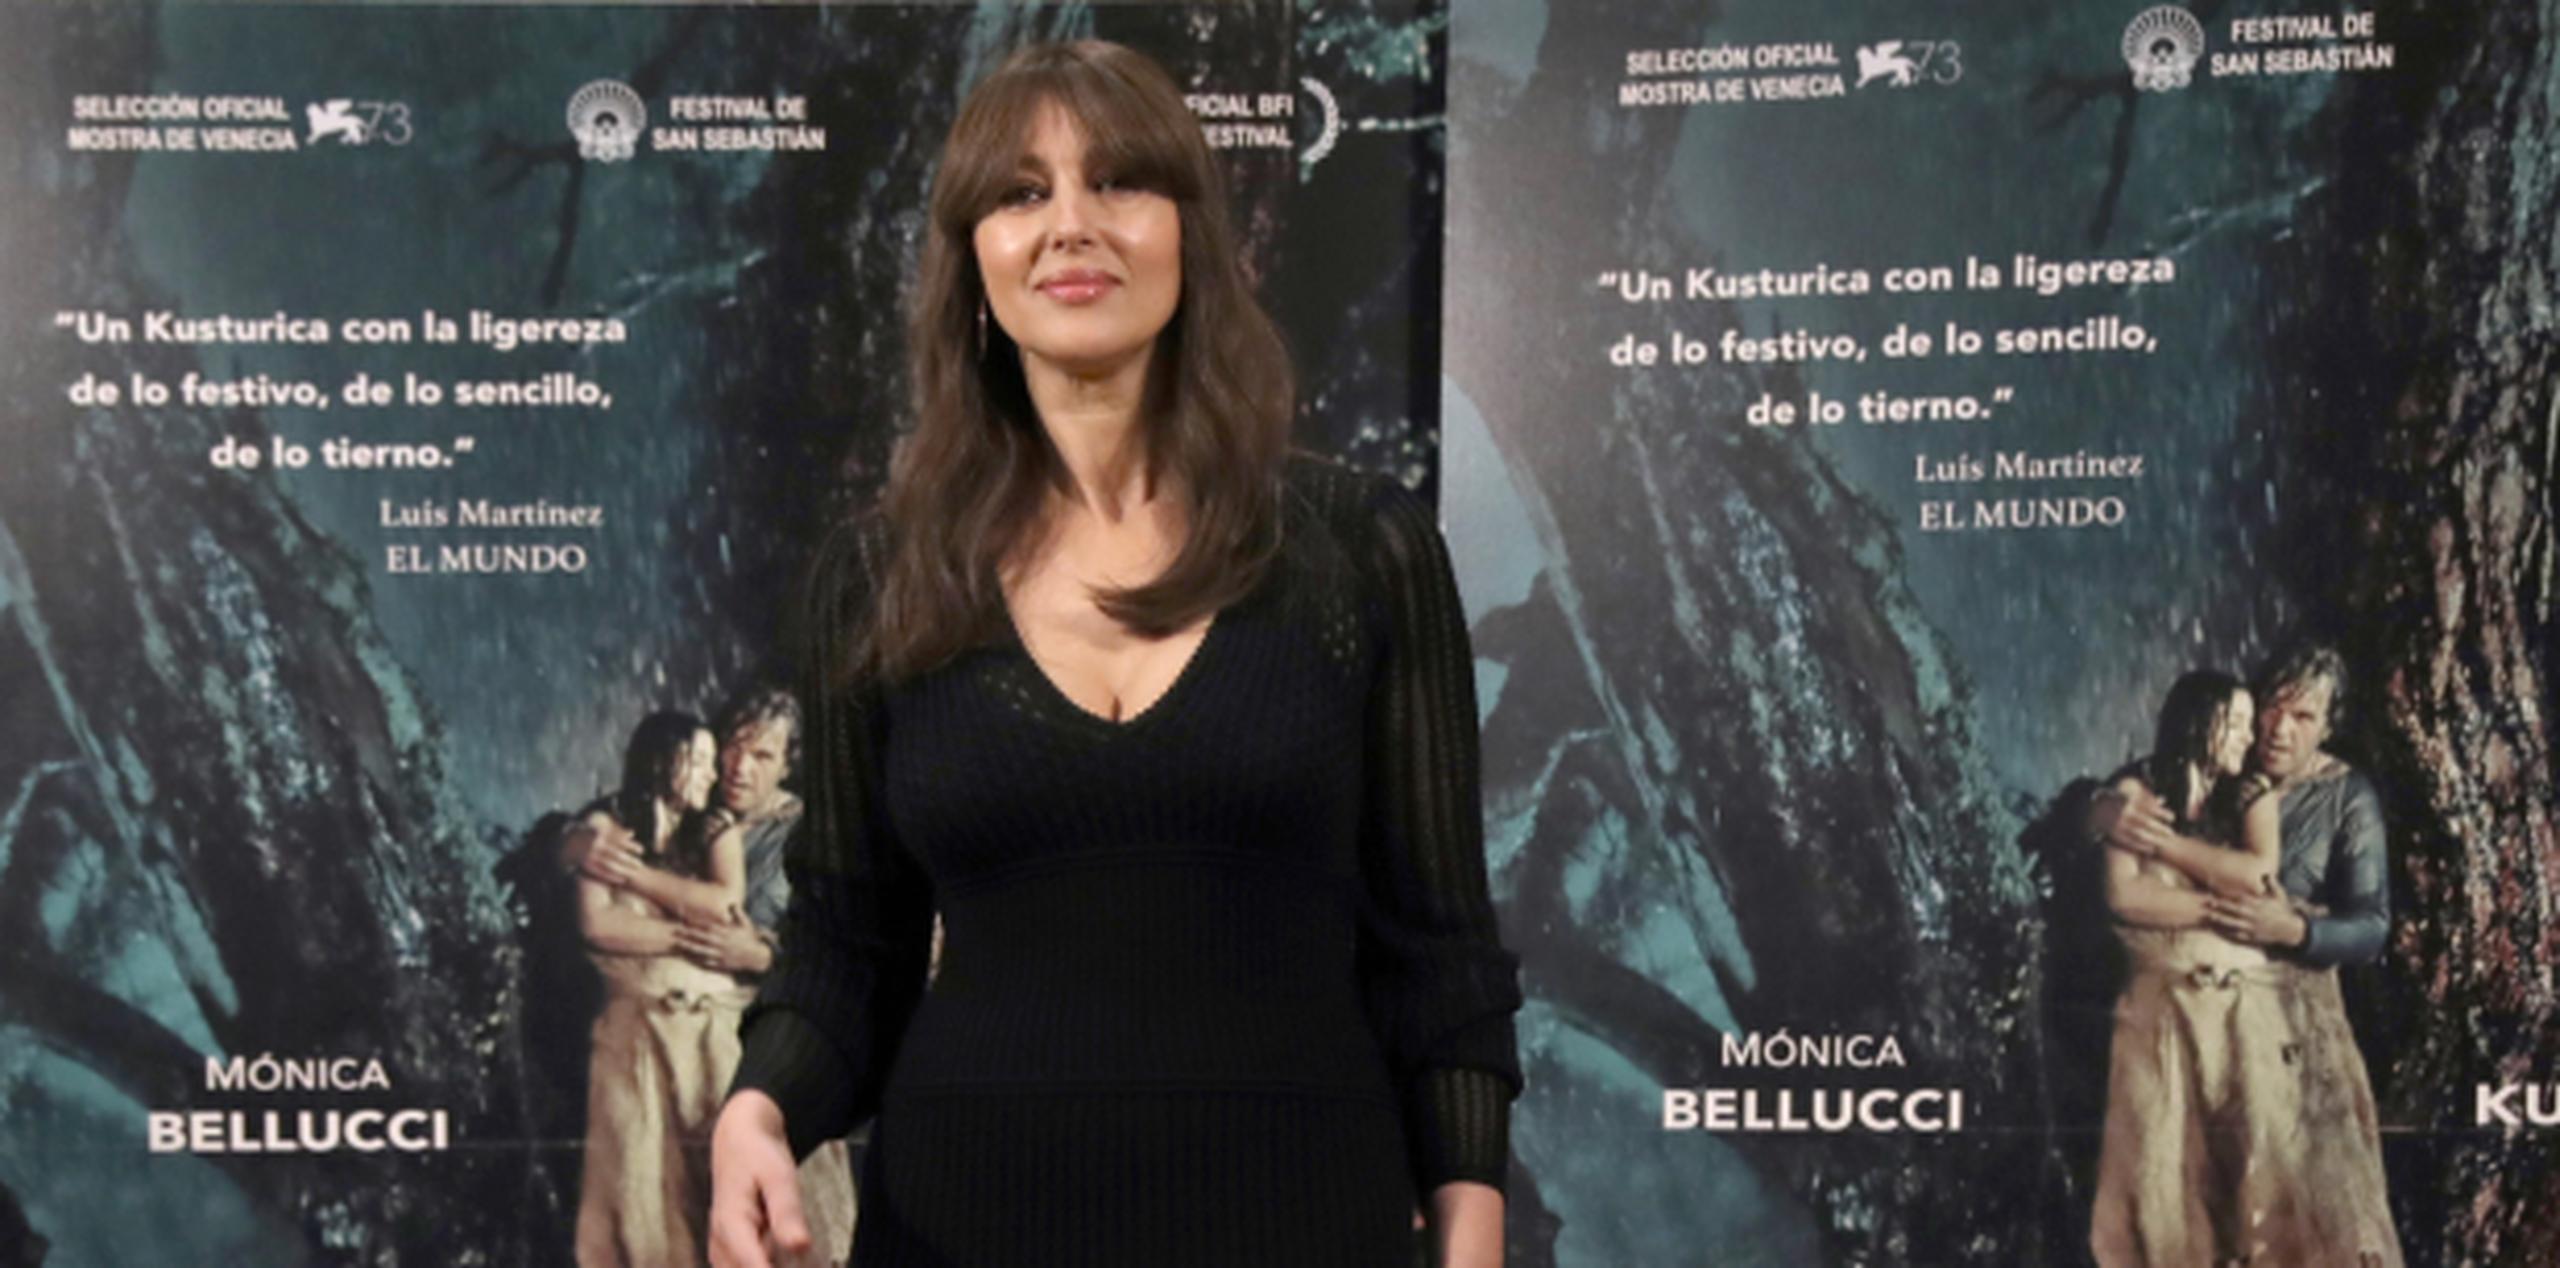 Cuenta Bellucci que en su opinión la "sociedad está cambiando" y la manera en que se mira a las mujeres y a las actrices cuando lleguen a edad madura es ahora "diferente".